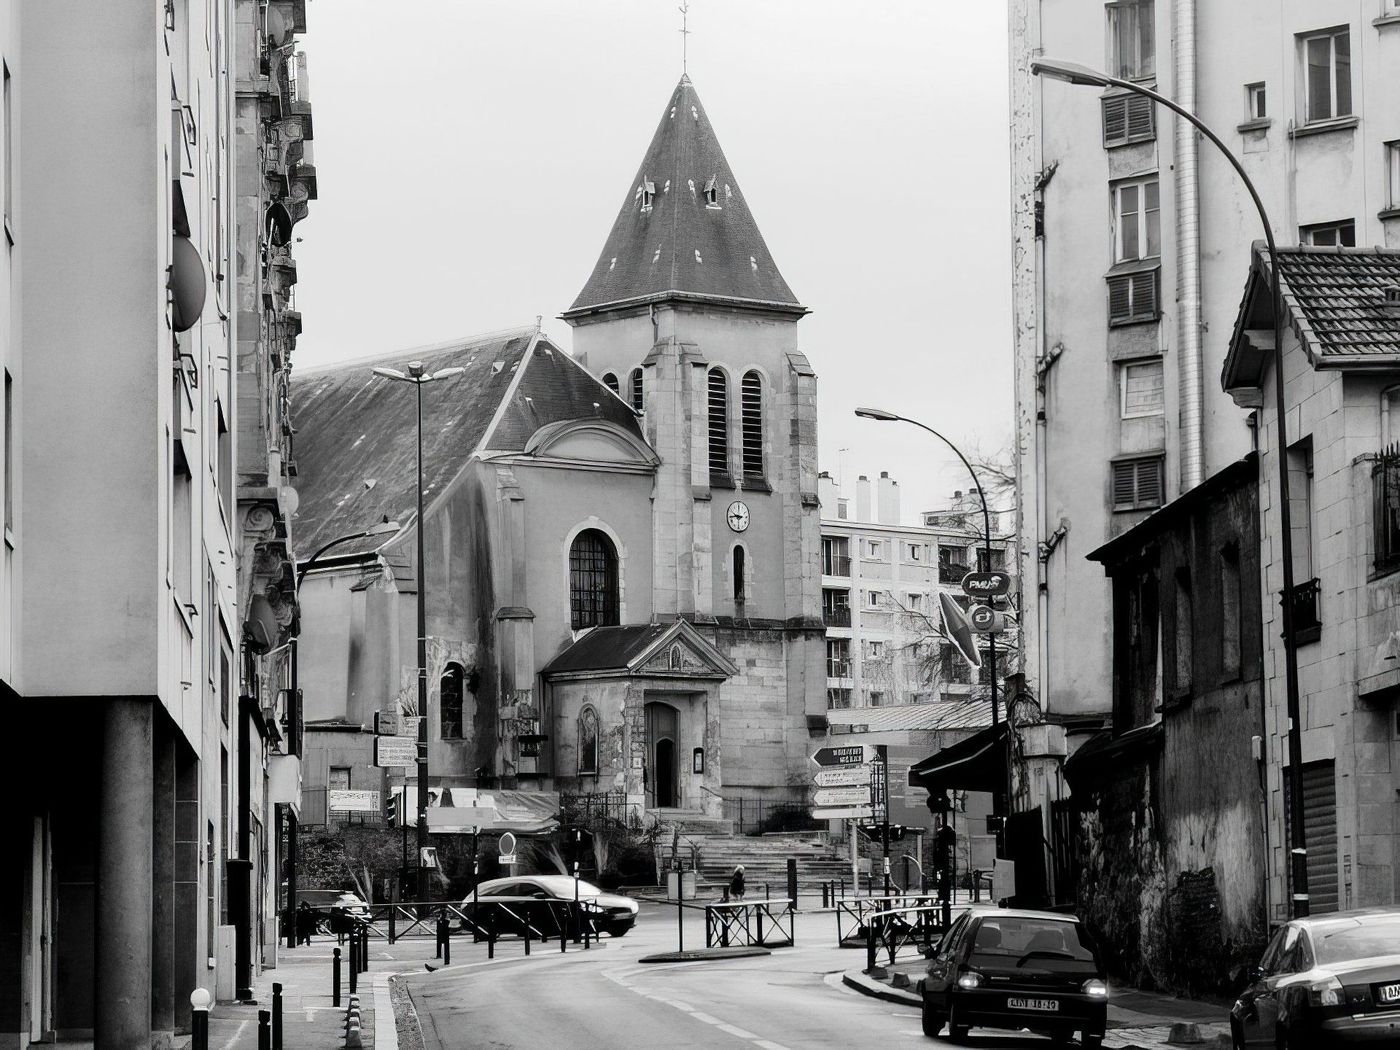 L'église St Germain L'Auxerrois de Pantin